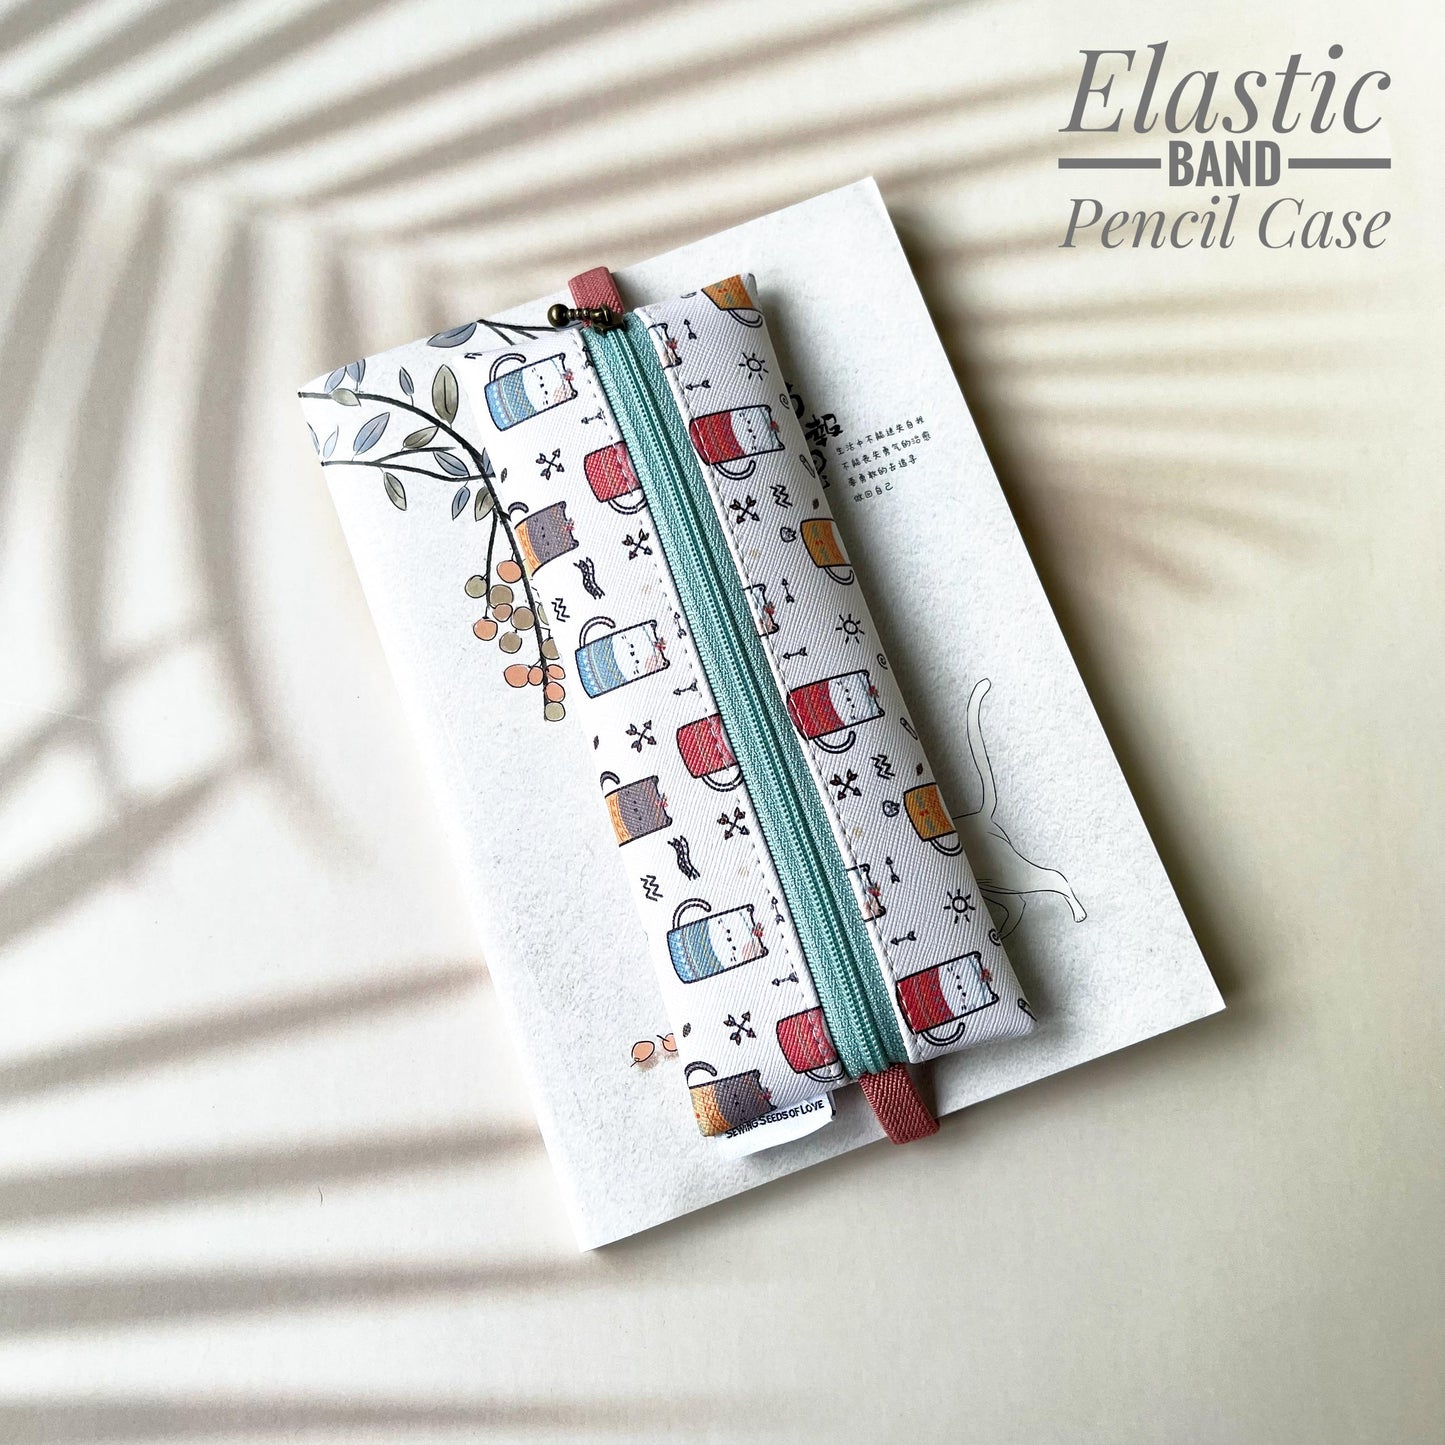 Elastic Band Pencil Case - EBPC25